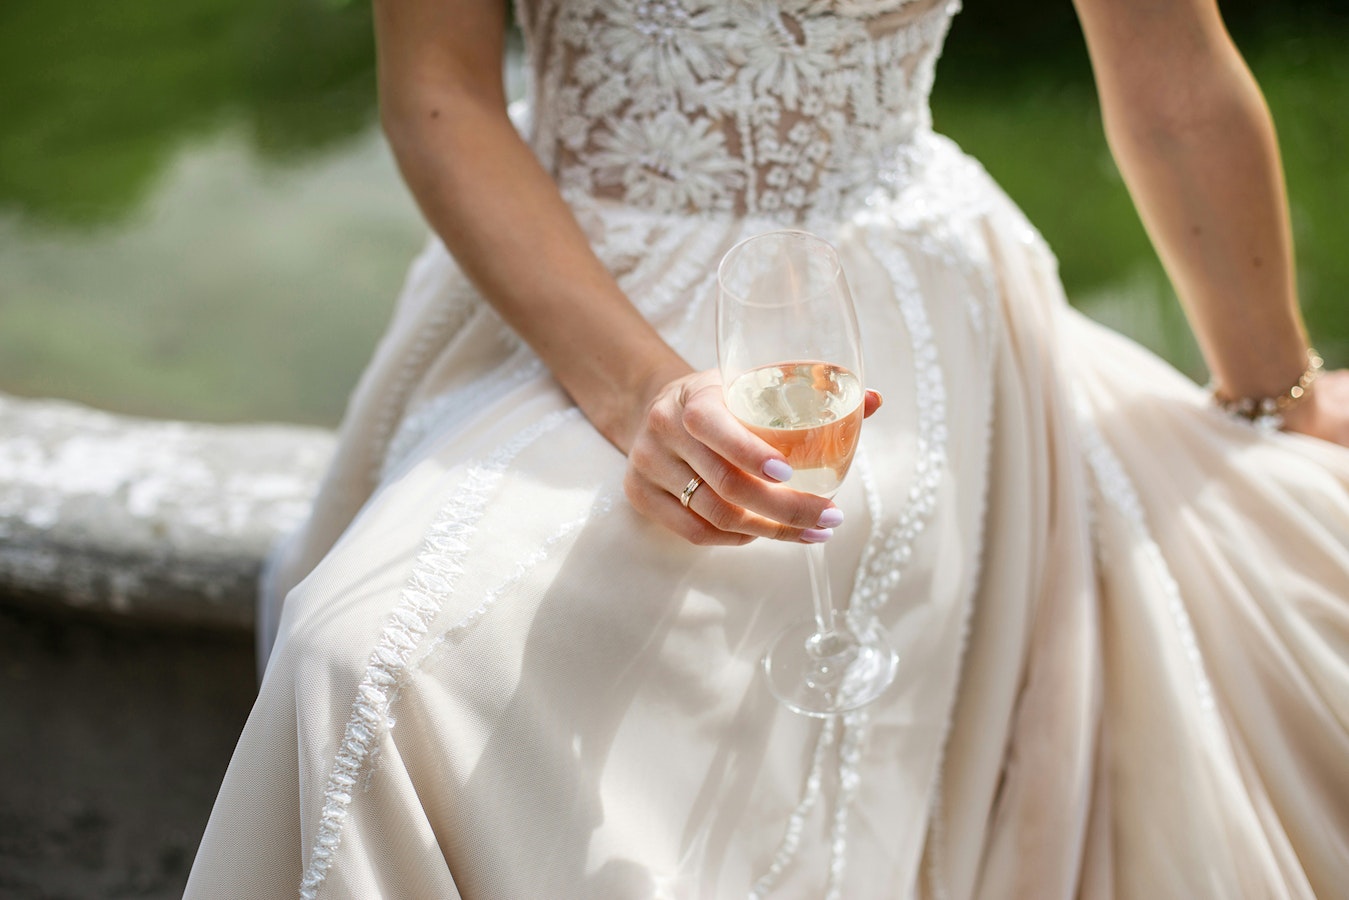 Wedding Dresses Affordable Khrystyna-shevtsiv-jaSNSIJJQQY-unsplash Copy